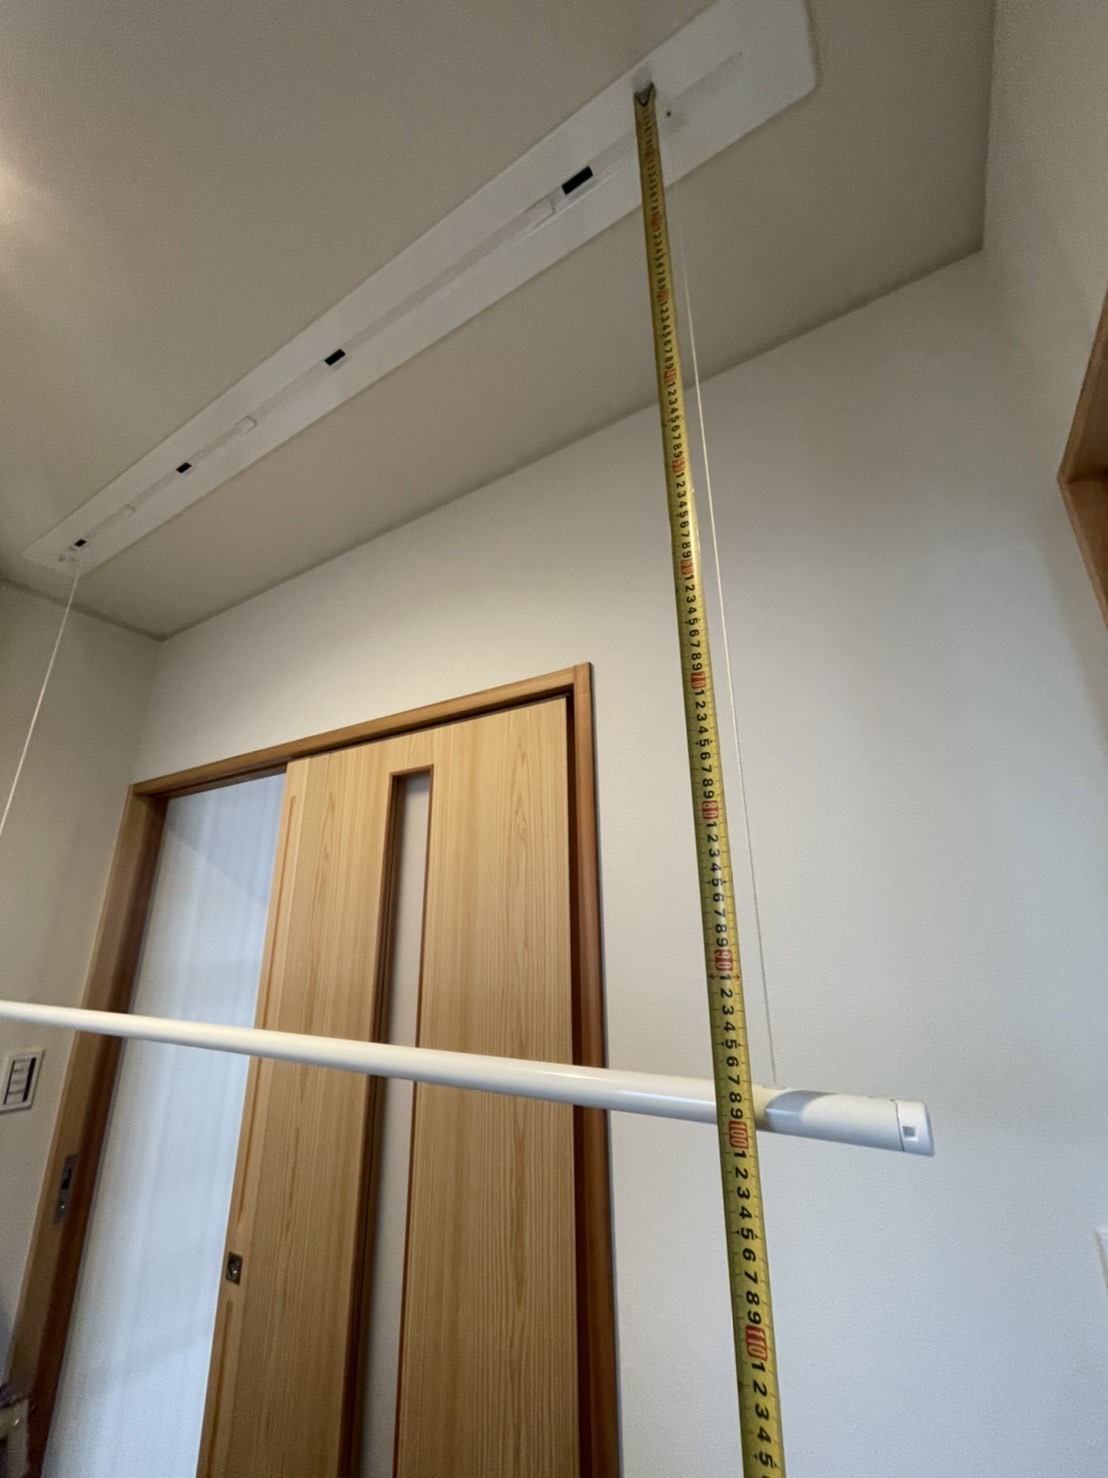 愛知県名古屋市天白区にある住宅にて、天井埋込タイプの室内物干工事を行いました。（ホスクリーン　URB-L）【窓香房】